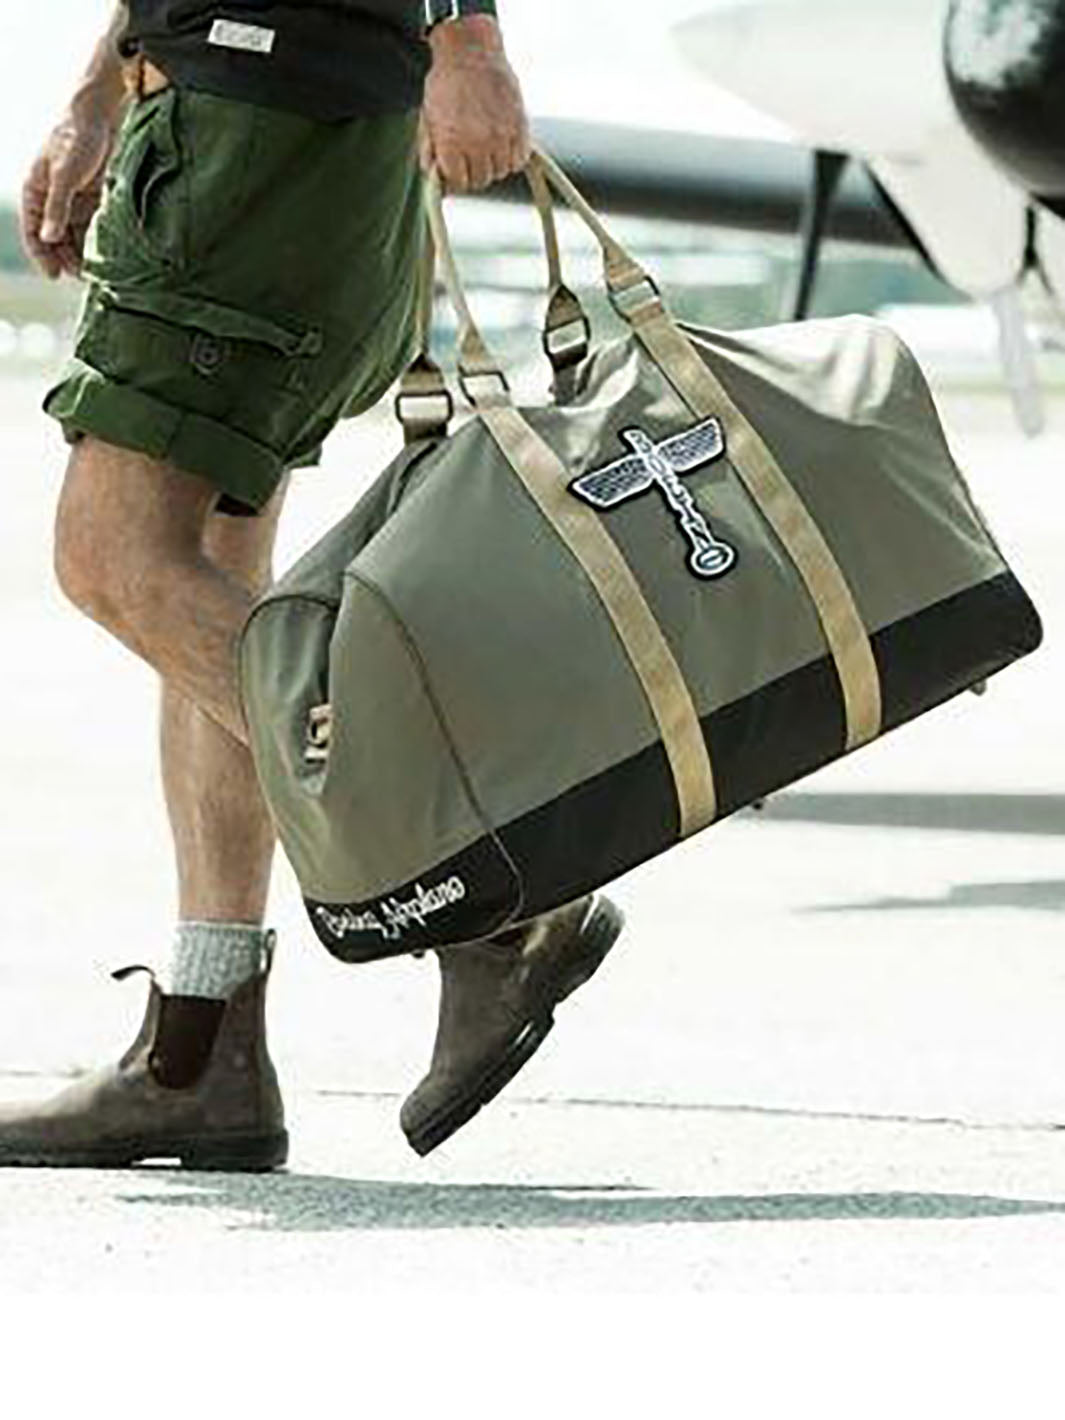 Homme transportant un sac duffle bag Boeing Totel kaki avec poignées